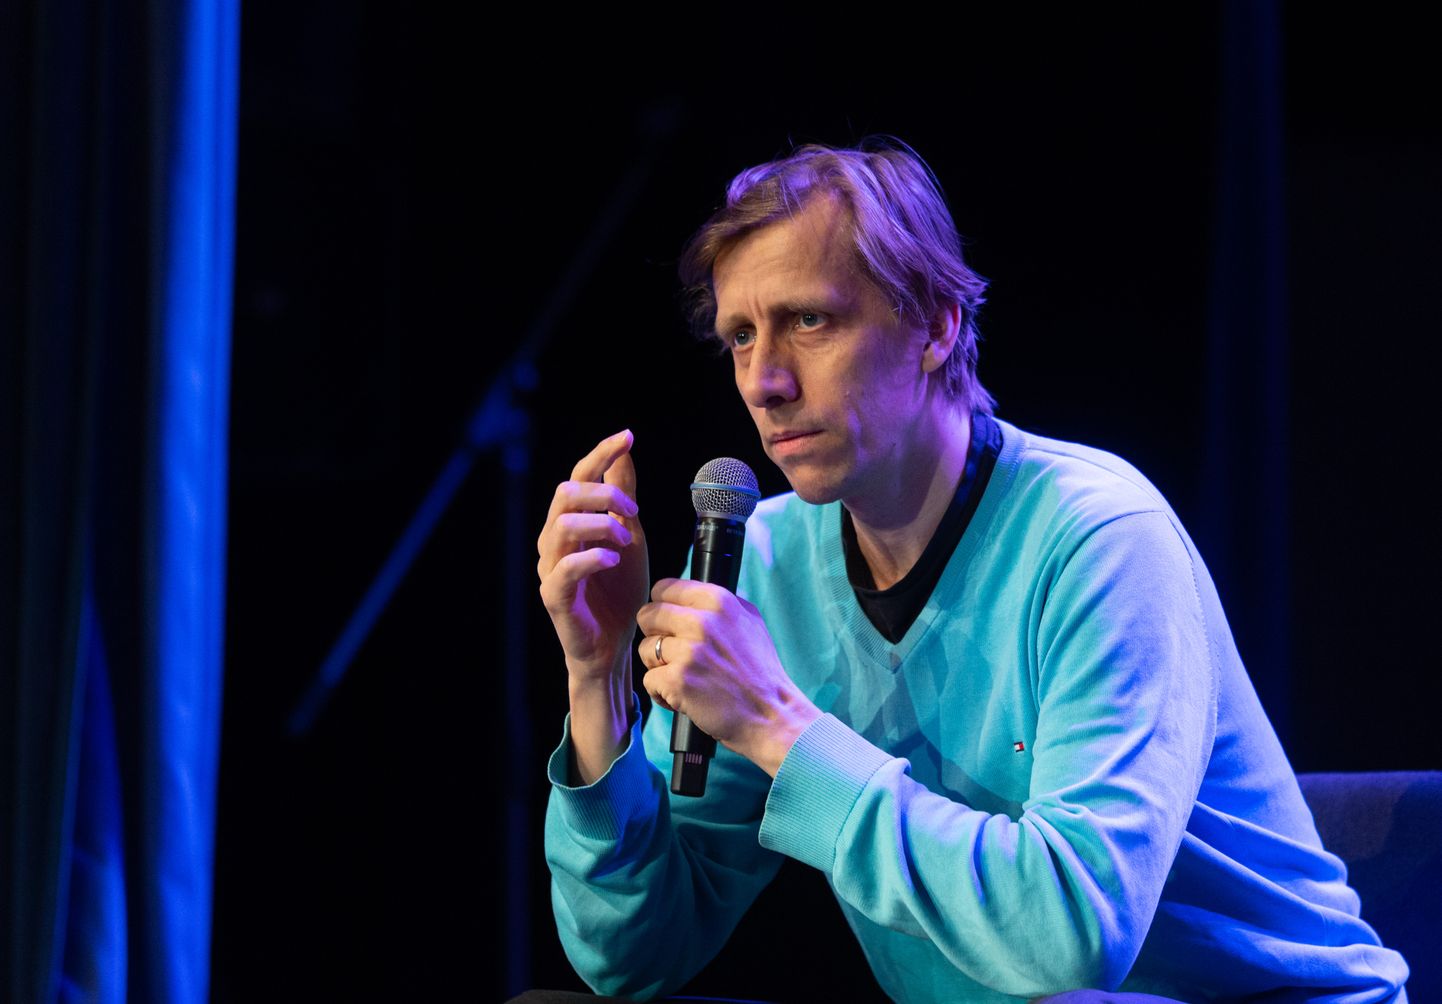 Ahti Heinla, üks rakenduse Skype loojatest ja Ambient Sound Investmentsi omanikest.
ELMO RIIG/Sakala.